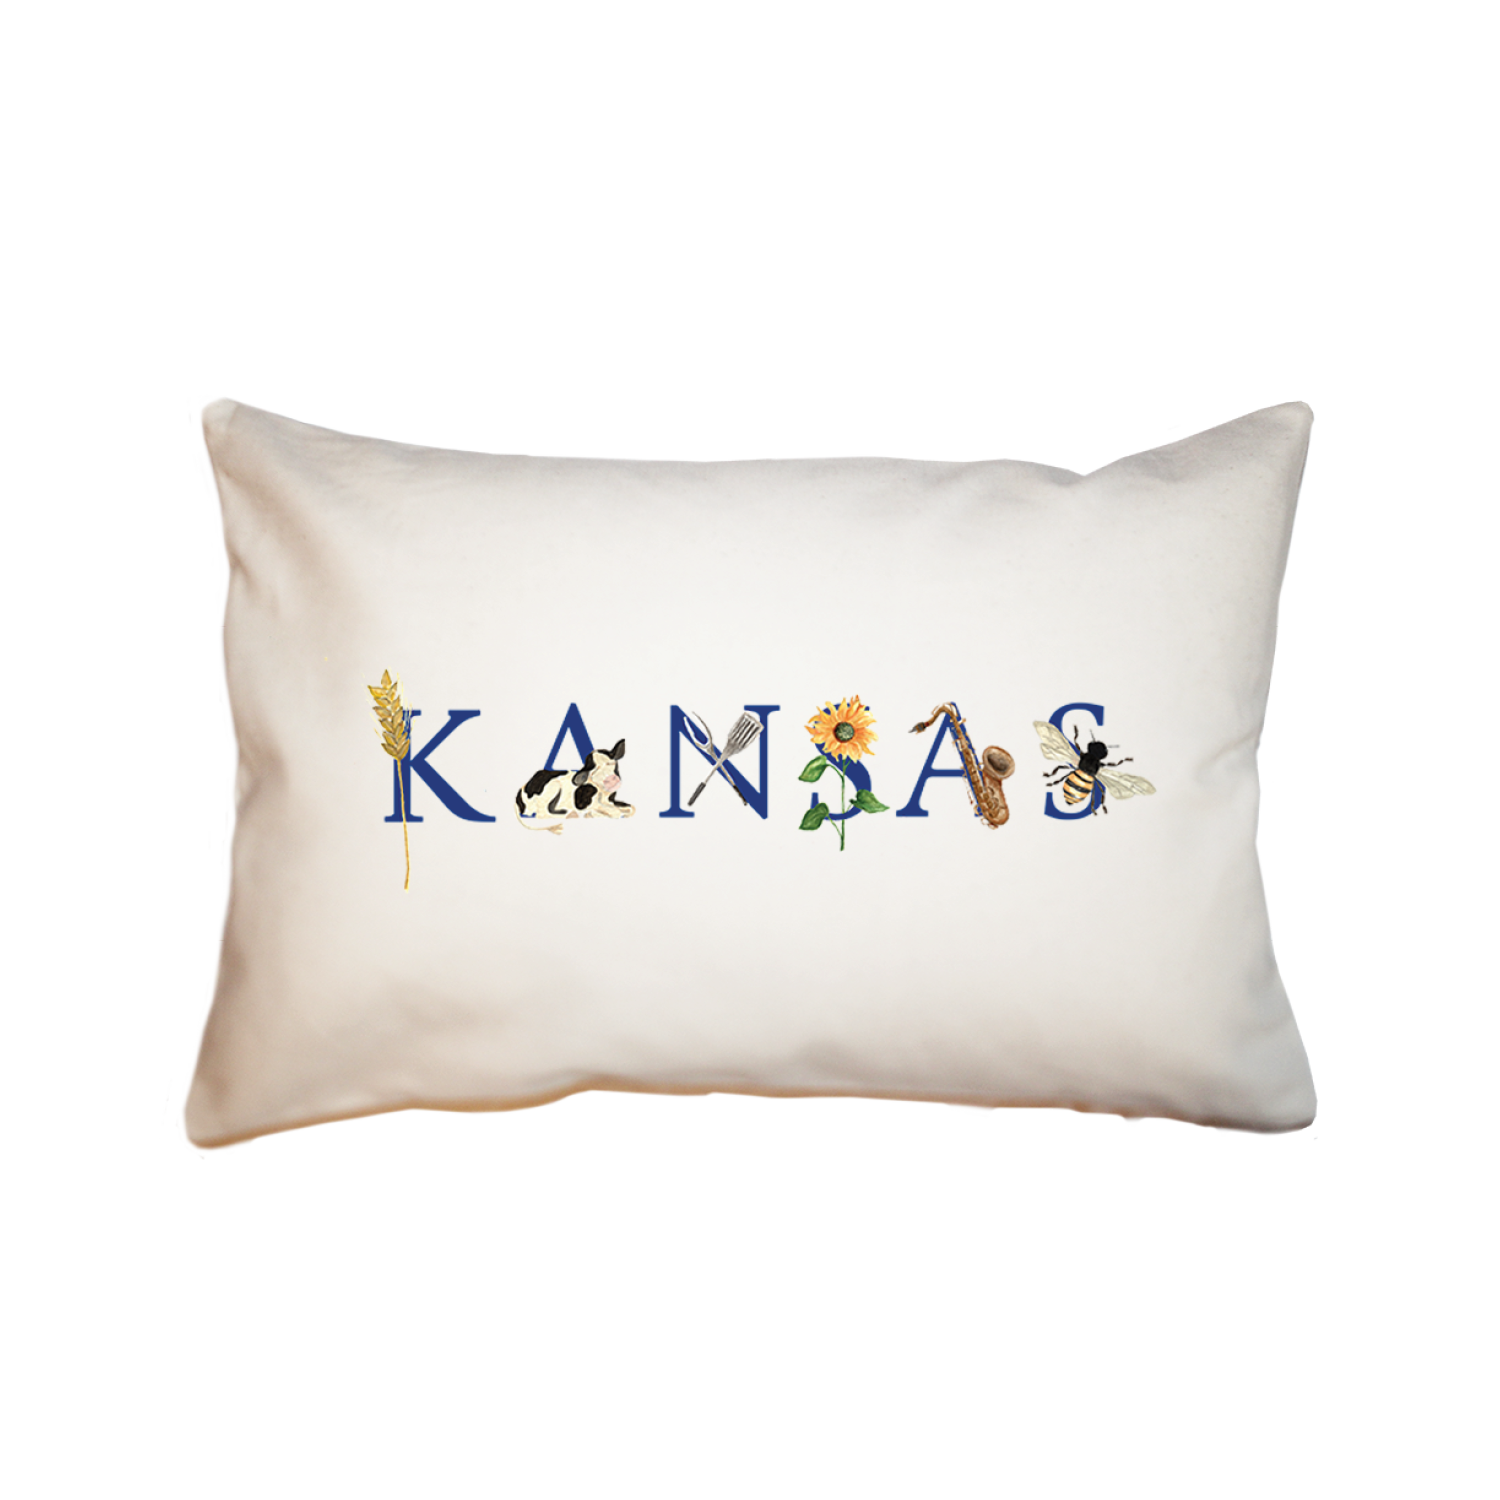 Kansas large rectangle pillow